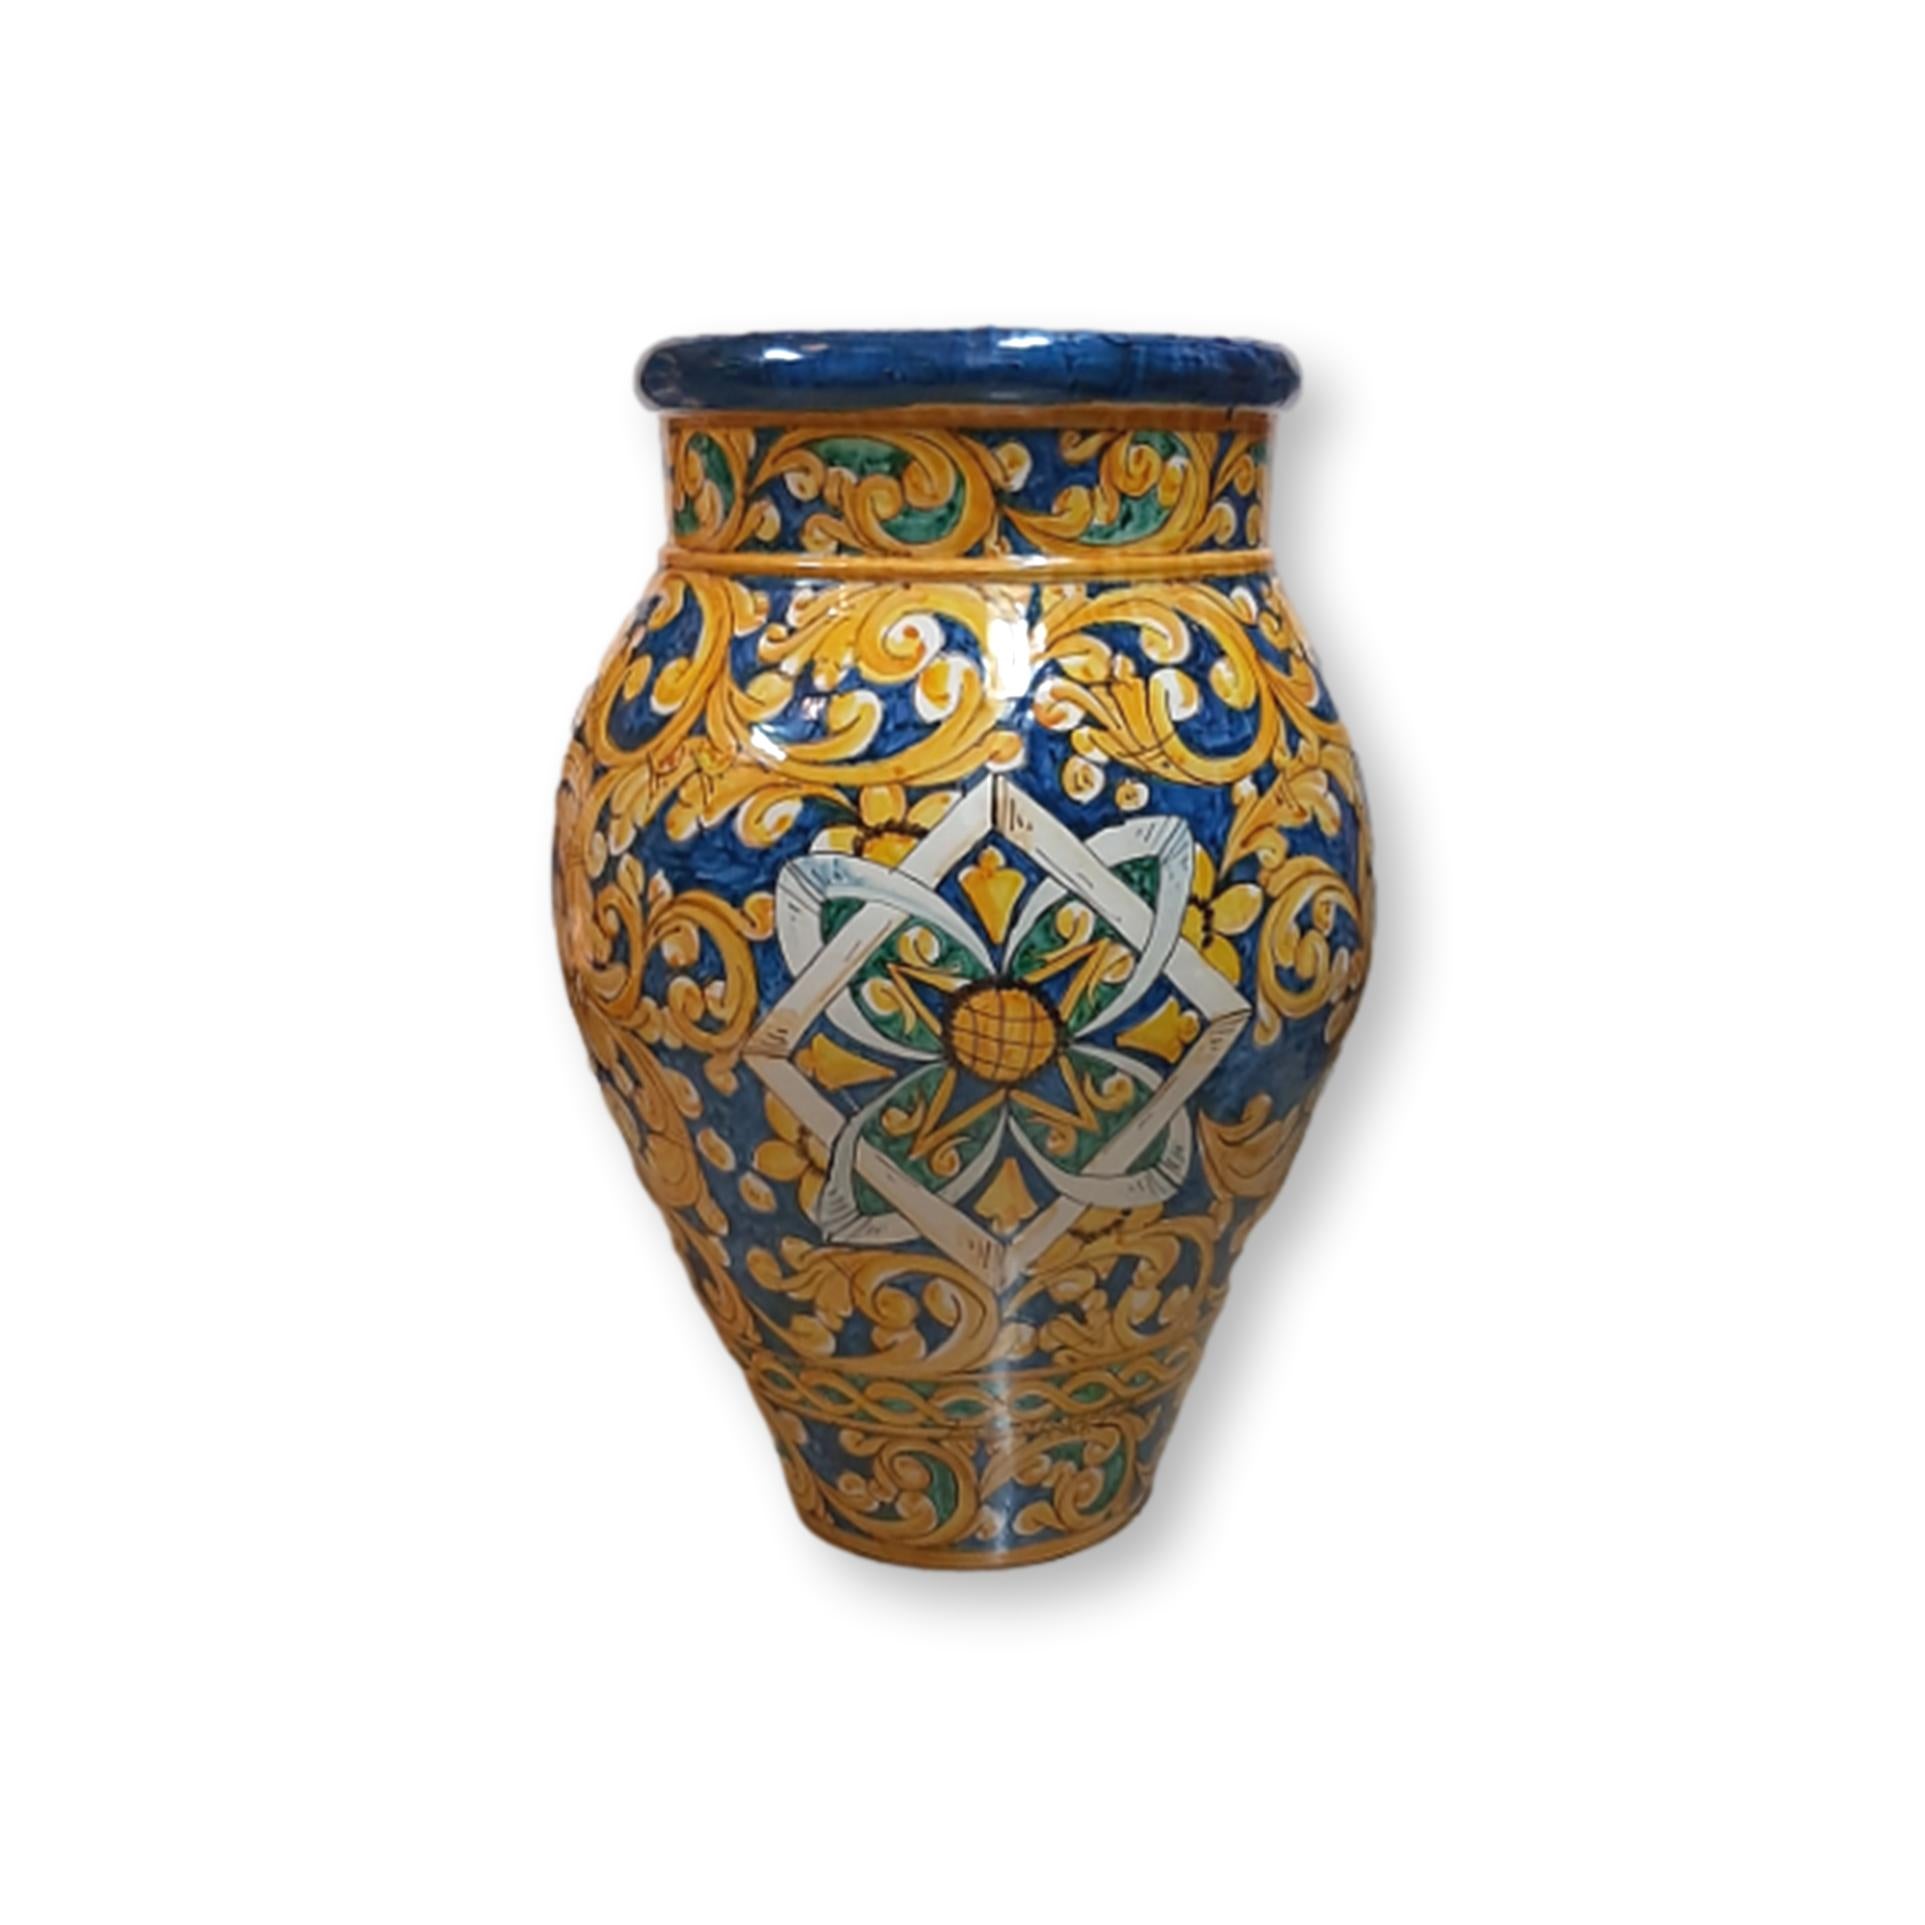 Giara in ceramica dipinta a mano - Decoro Giallo e blu con ornamento centrale